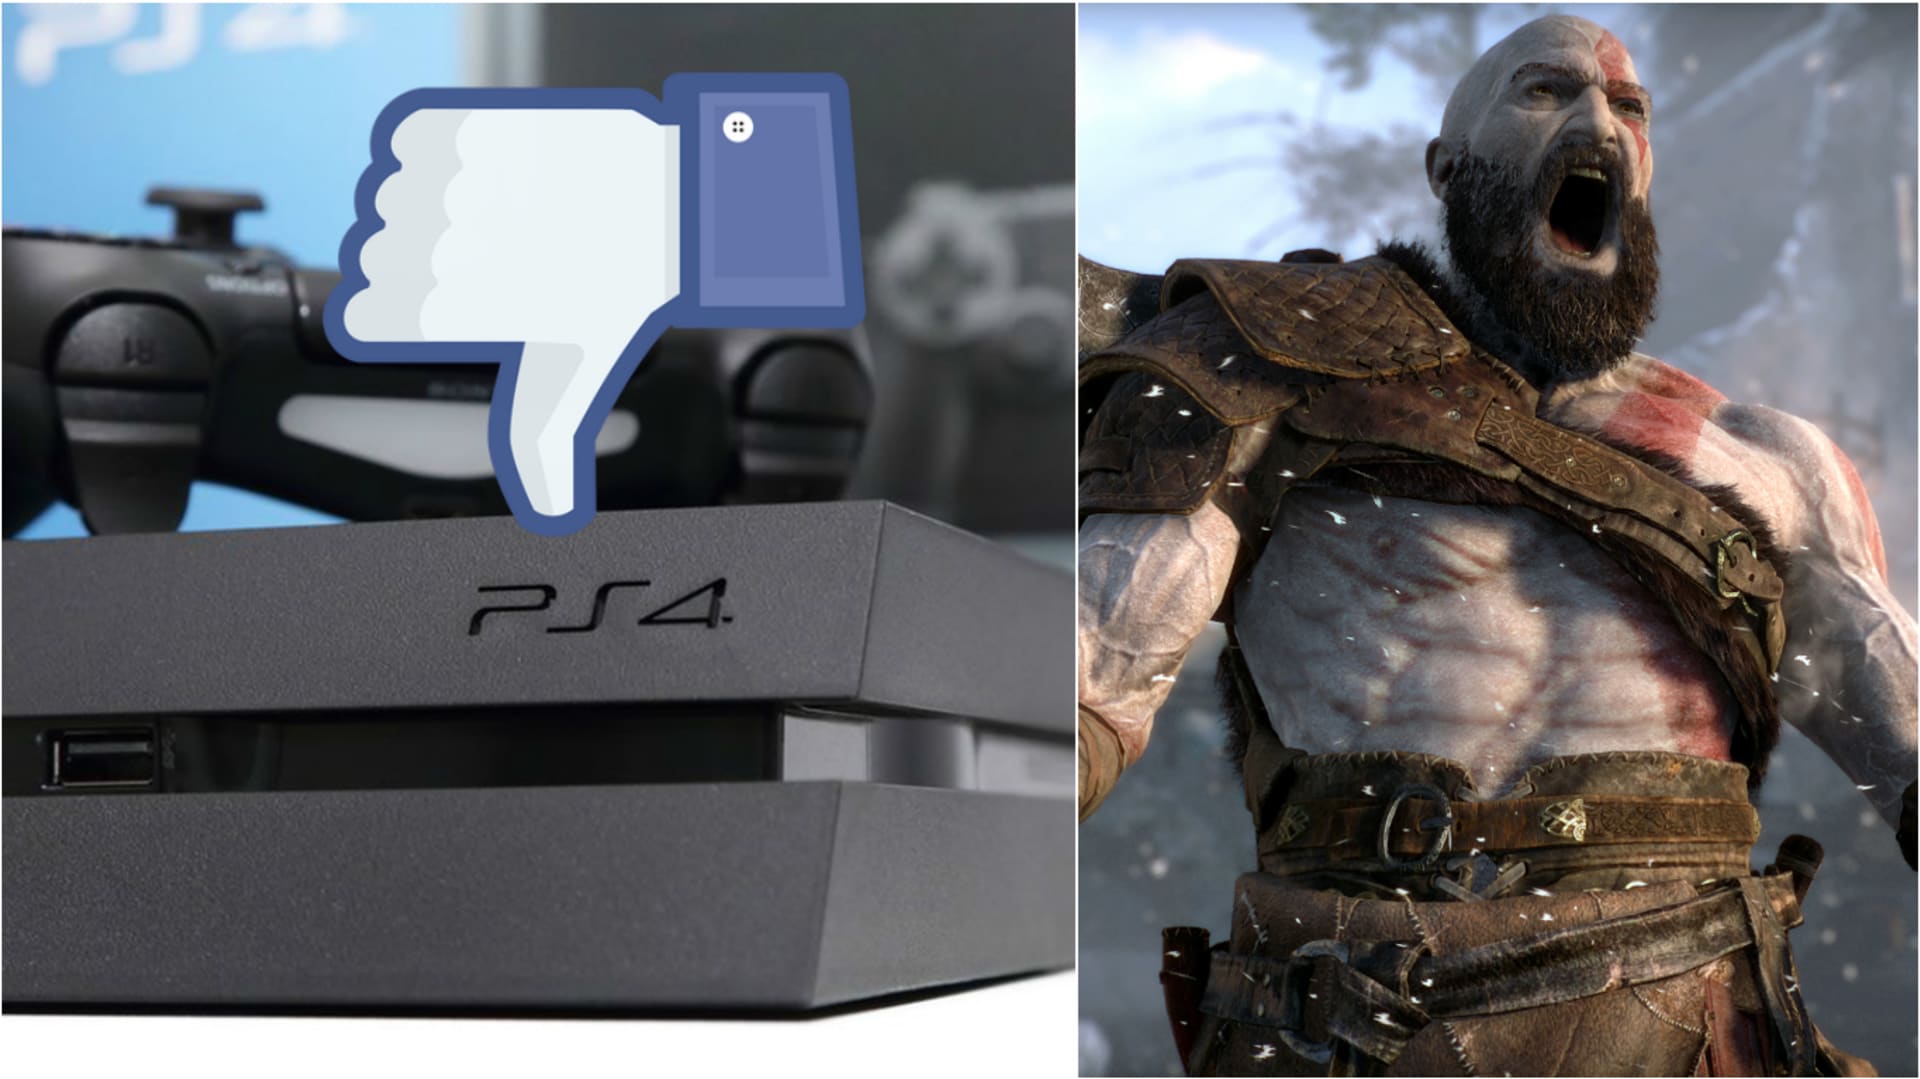 Chystá se zlatá verze PlayStationu 4?